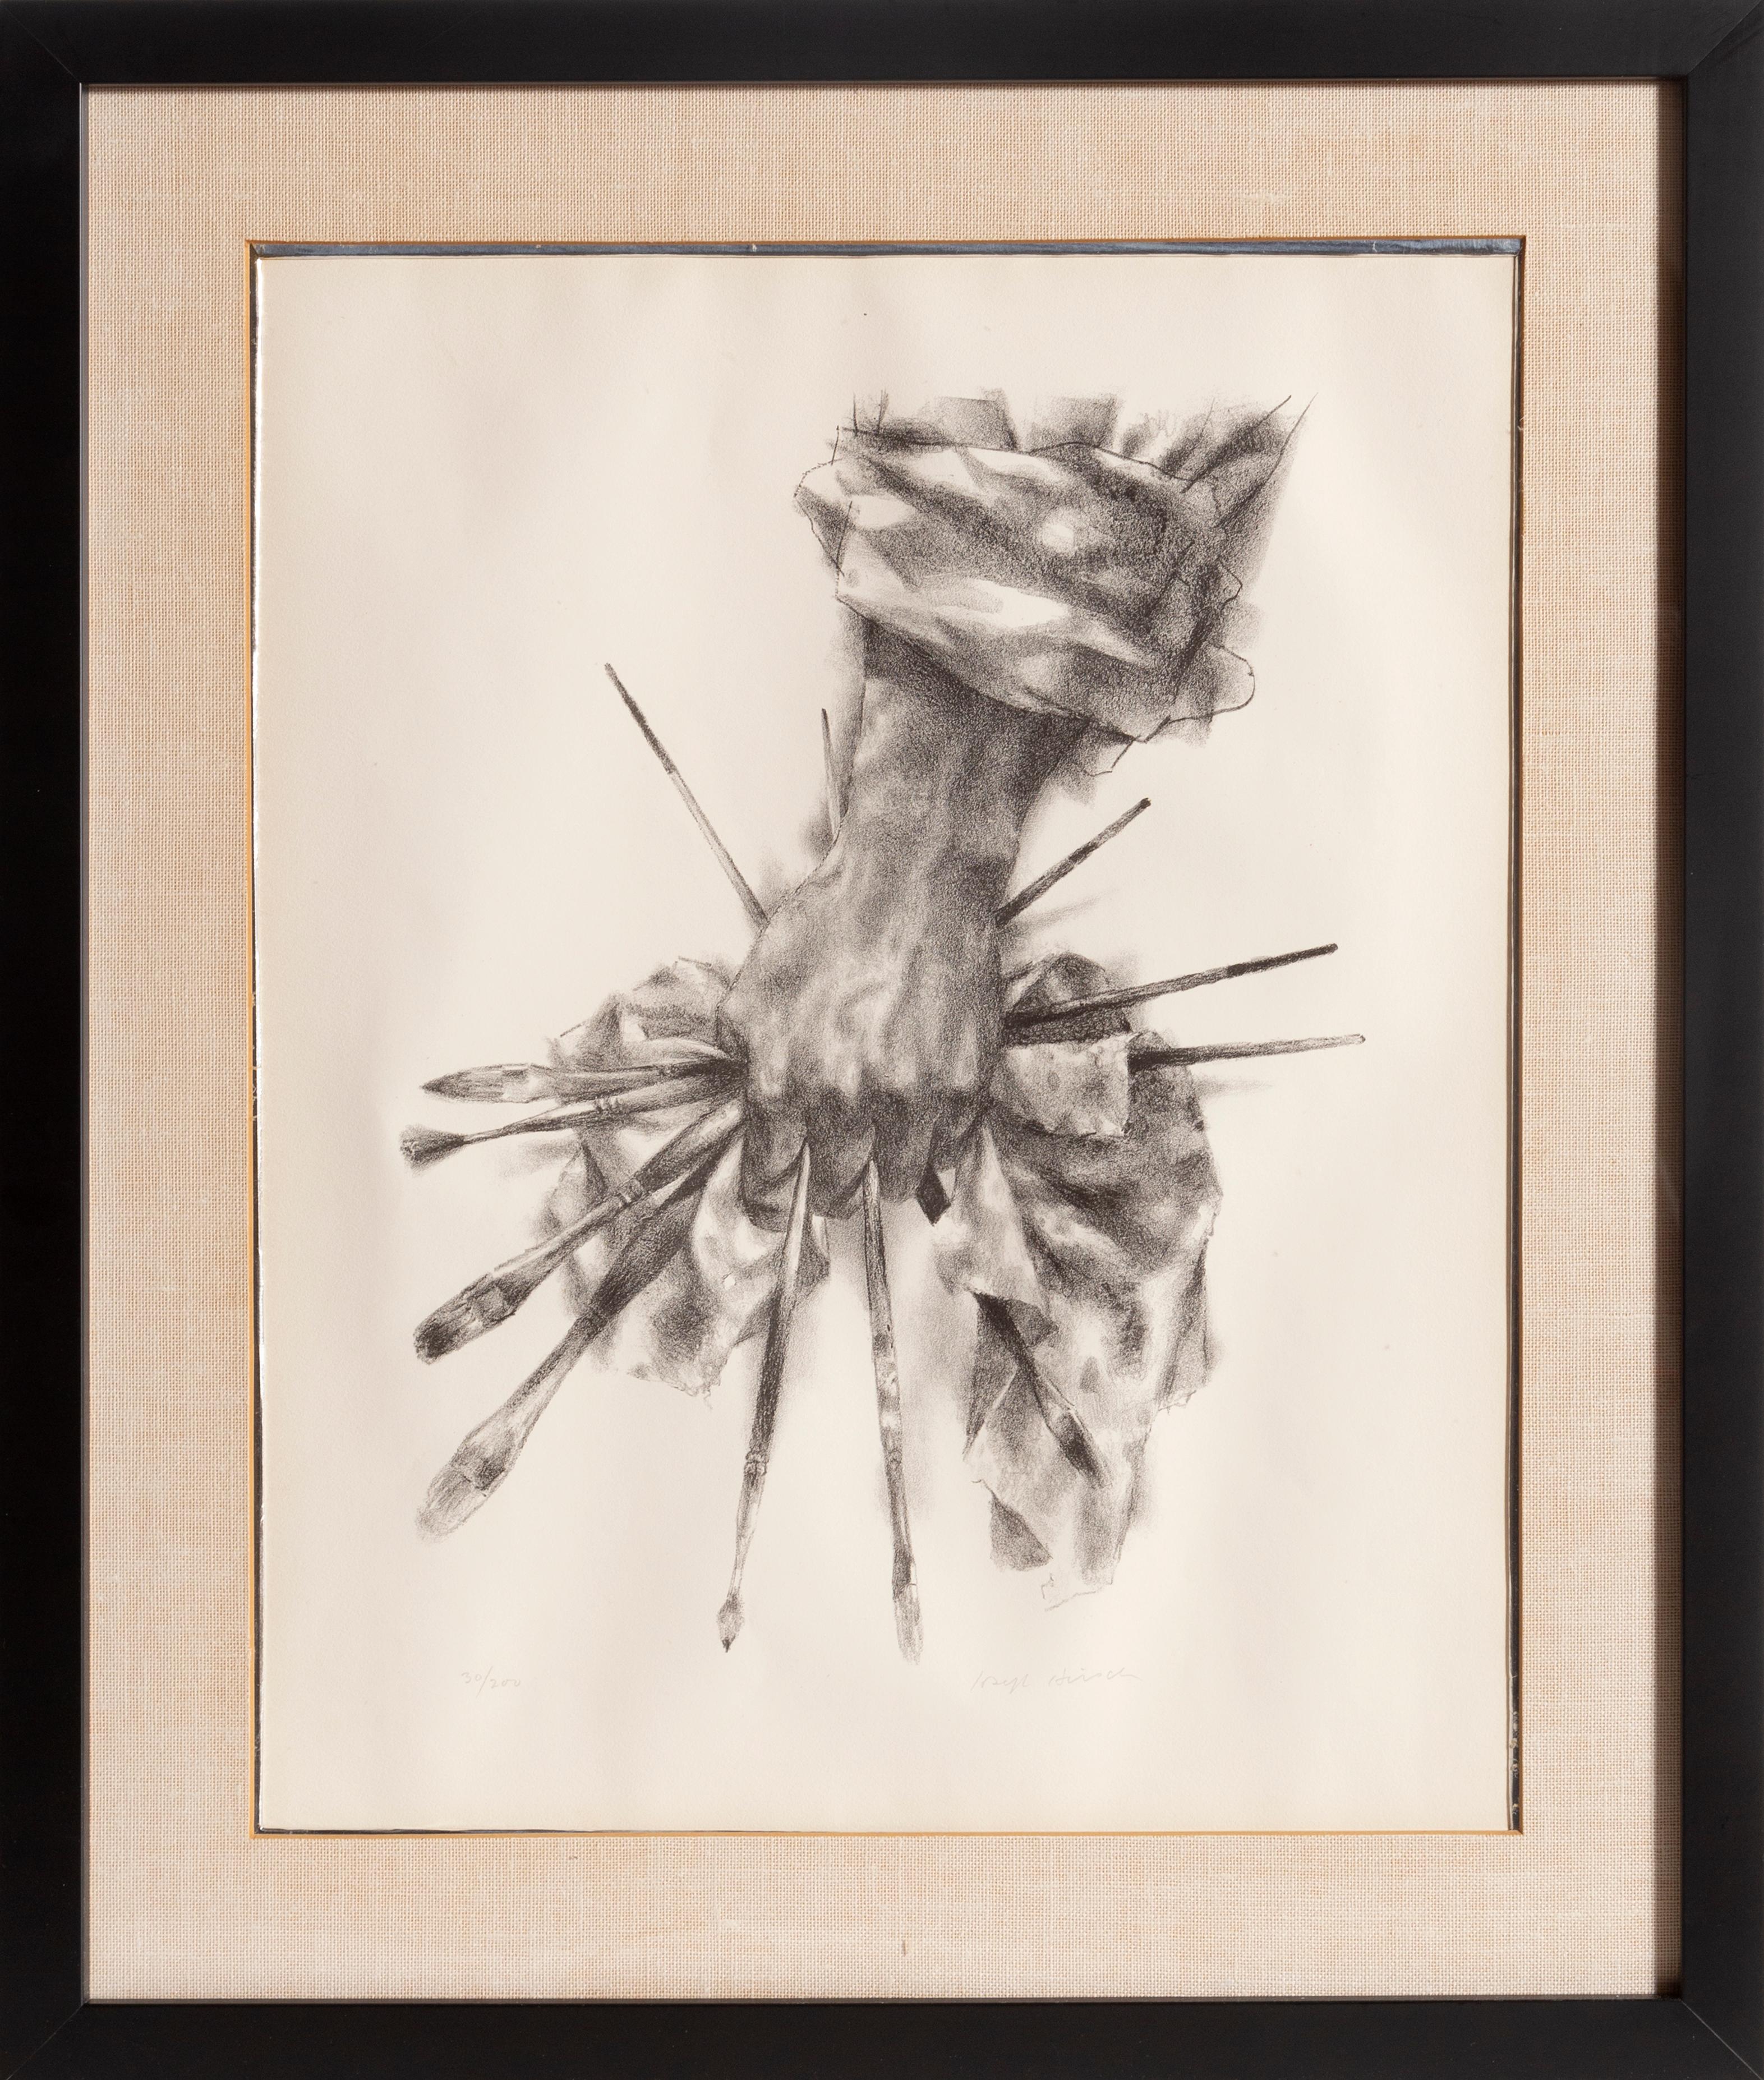 Artiste : Joseph Hirsch, américain (1901 - 1981)
Titre : La main de l'artiste (Cole 51)
Année : 1966
Médium : Lithographie, signée et numérotée au crayon
Edition : 30/200
Taille de l'image : 19 x 15 pouces
Taille du cadre : 25.5 x 21.5 pouces